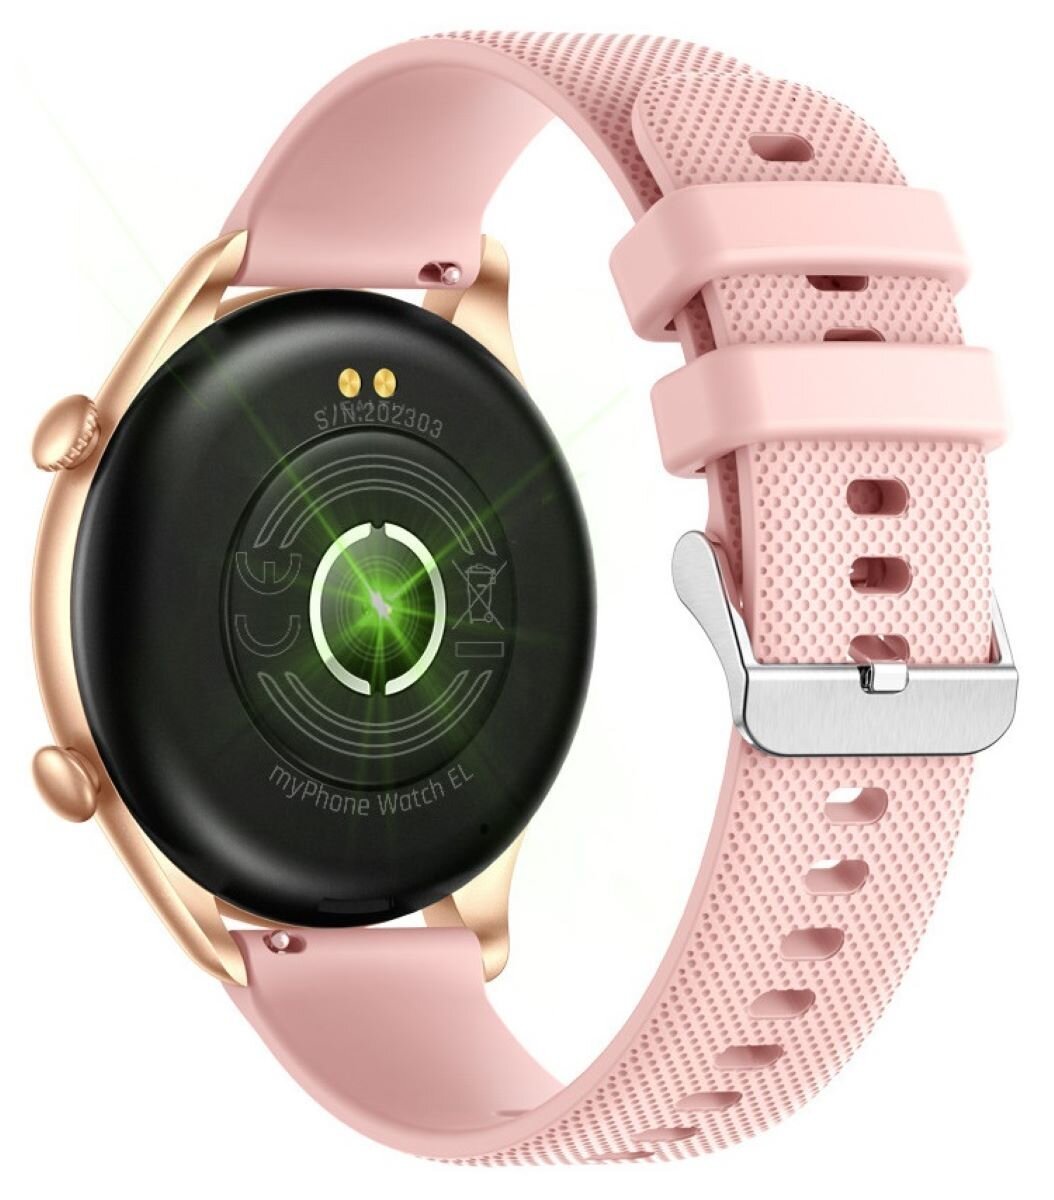 Išmanusis laikrodis MyPhone Watch EL, rožinis - 4